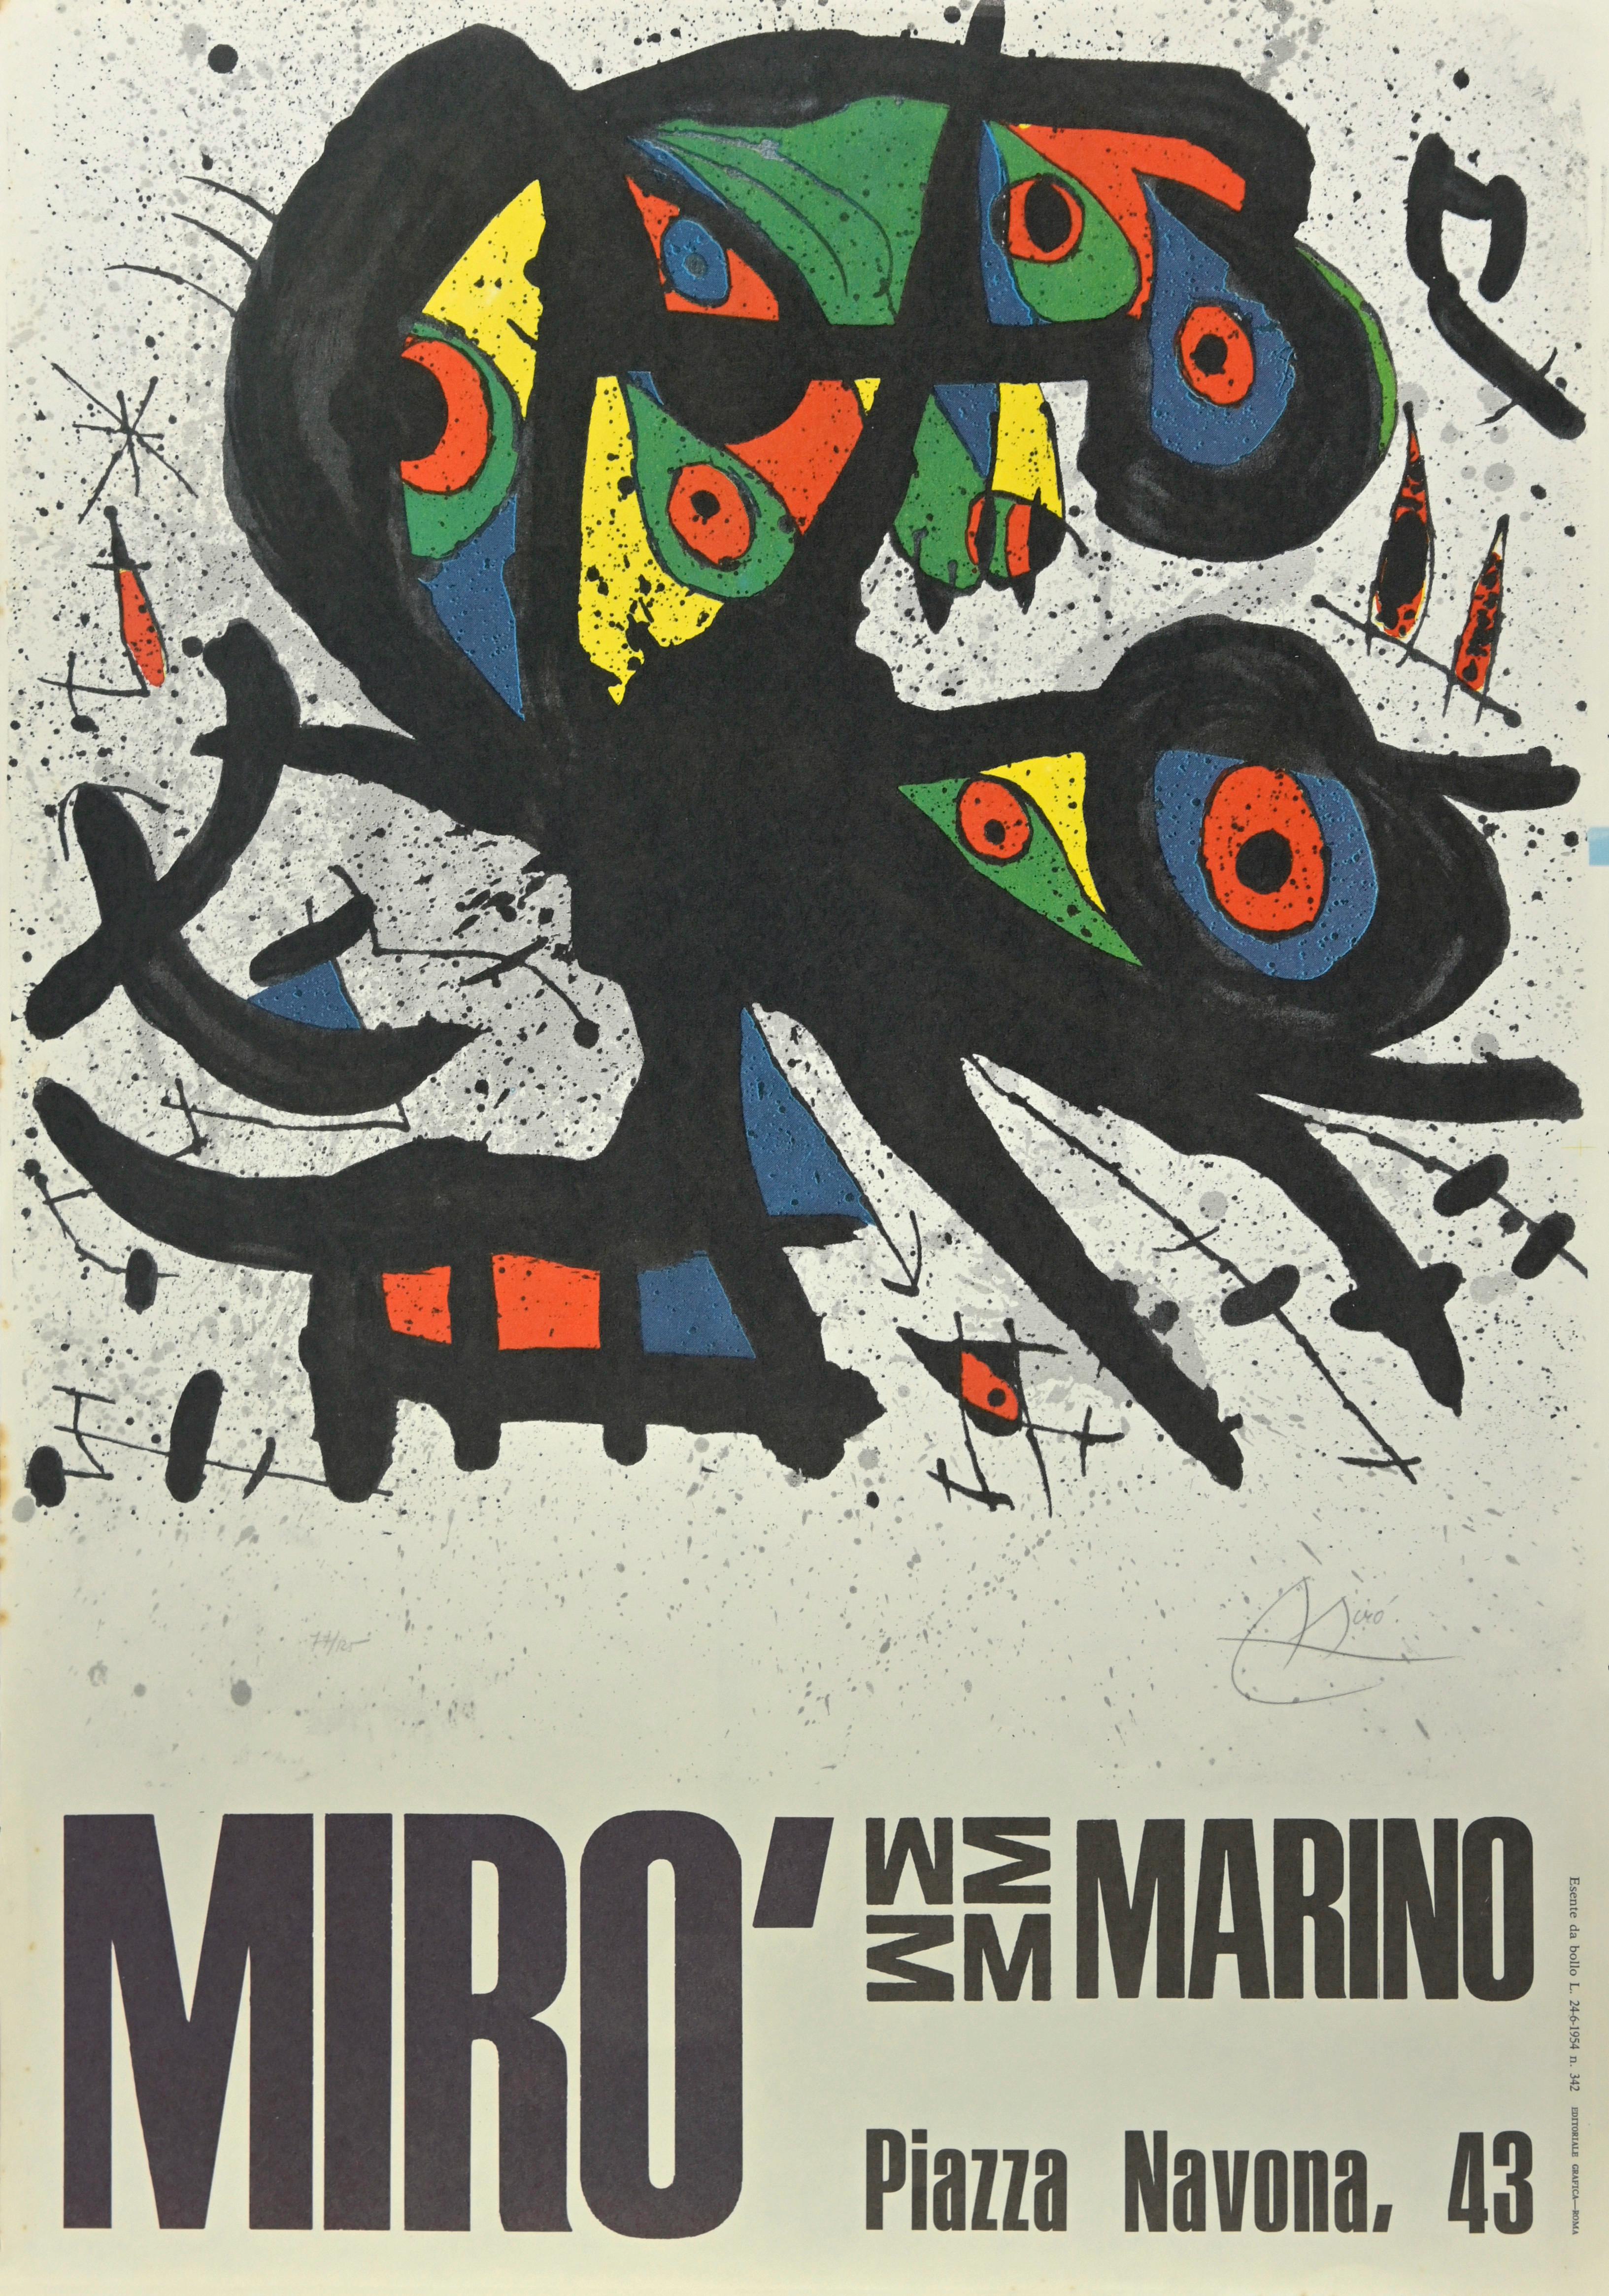 "Miró Ausstellungsplakat " ist ein Vintage  Foto-Offsetdruck nach Joan Miró aus dem Jahr 1971, er stammt von einem der italienischen Ausstellungsplakate des Künstlers, die in Rom, Piazza Navona, 43 in Marino stattfanden.

Perfekte Bedingungen, in